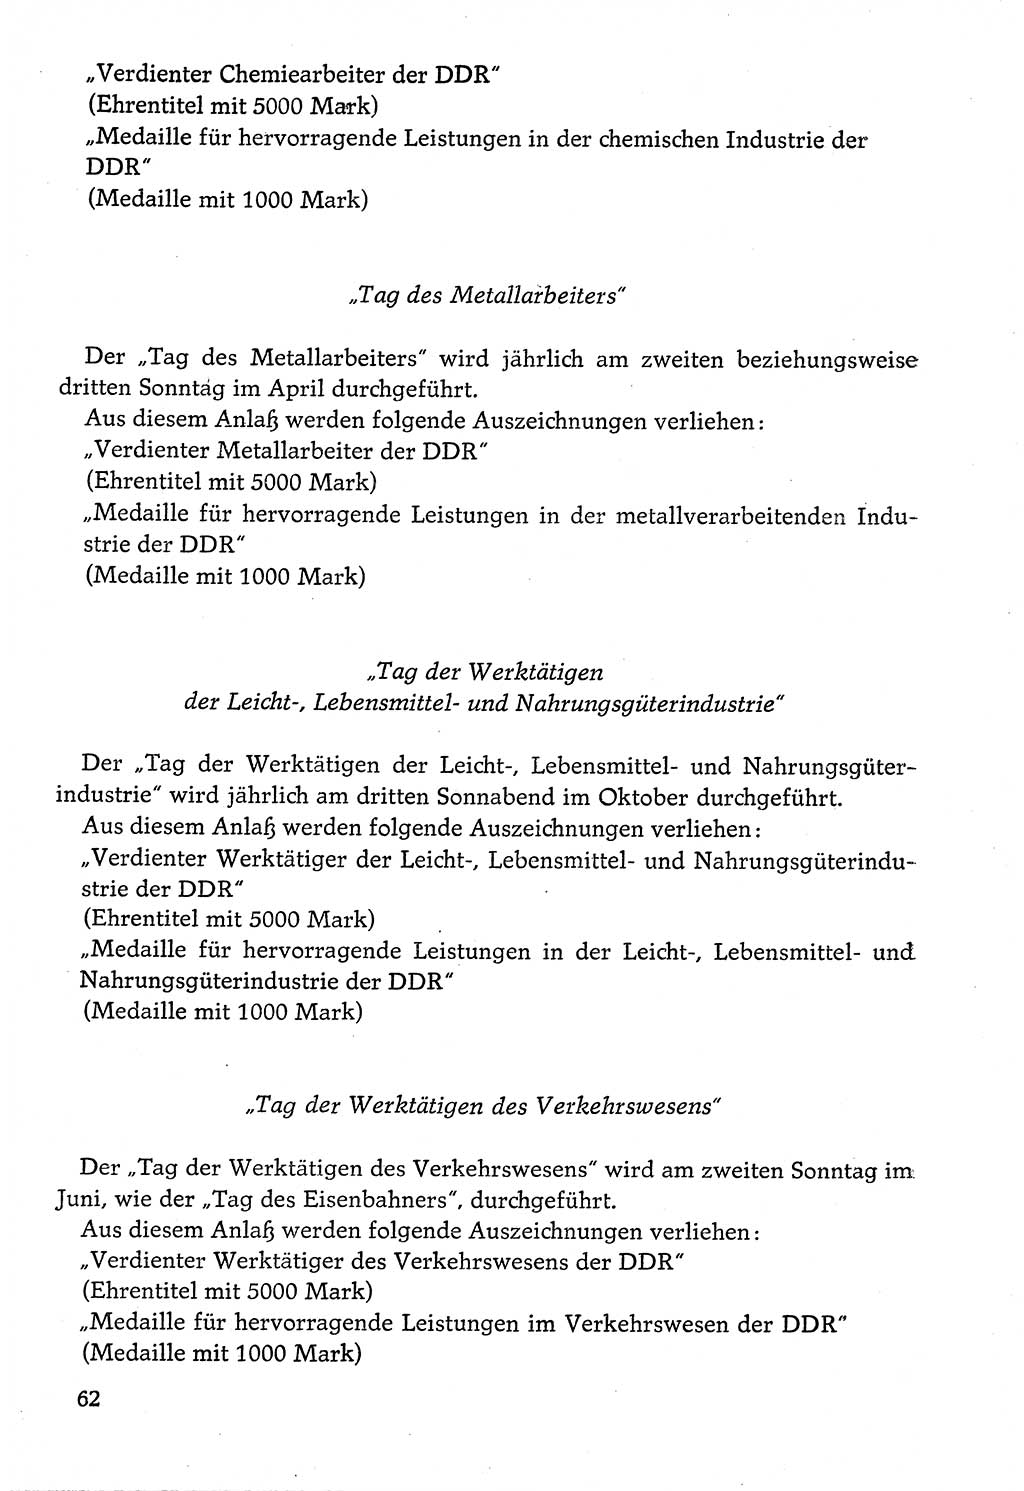 Dokumente der Sozialistischen Einheitspartei Deutschlands (SED) [Deutsche Demokratische Republik (DDR)] 1974-1975, Seite 62 (Dok. SED DDR 1978, Bd. ⅩⅤ, S. 62)